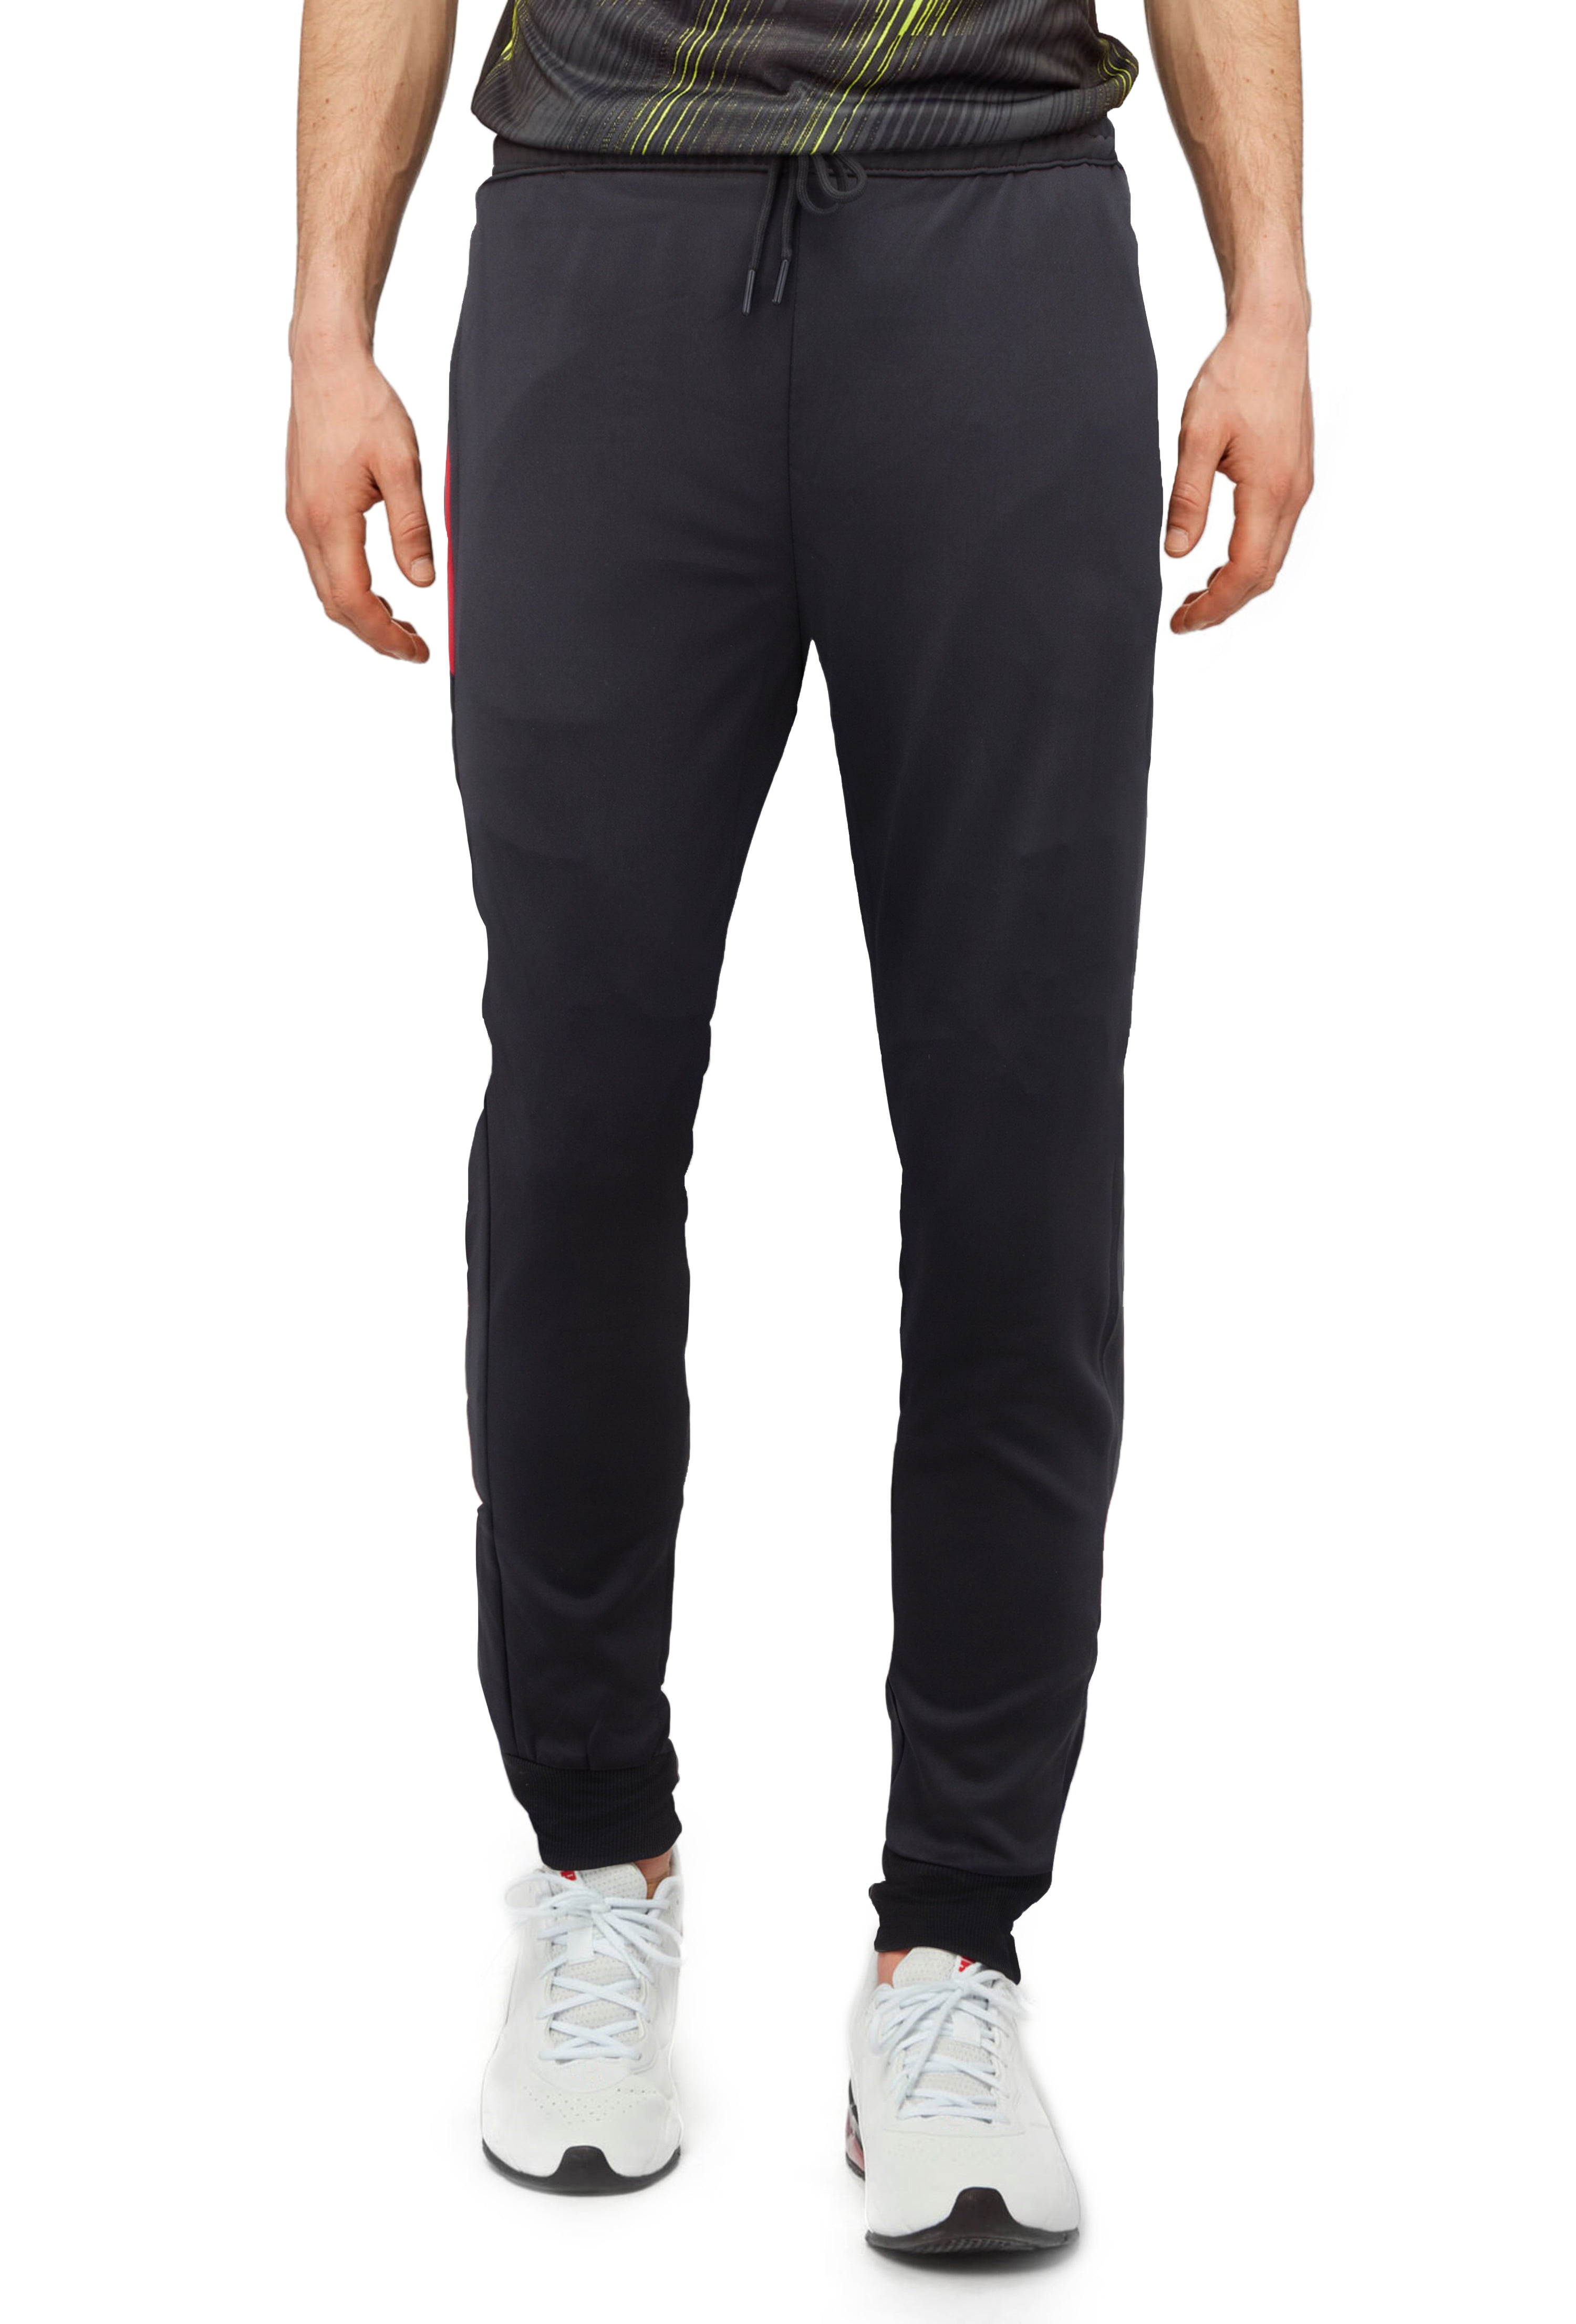 Men's Charcoal Grey Athletic Waterproof Pants